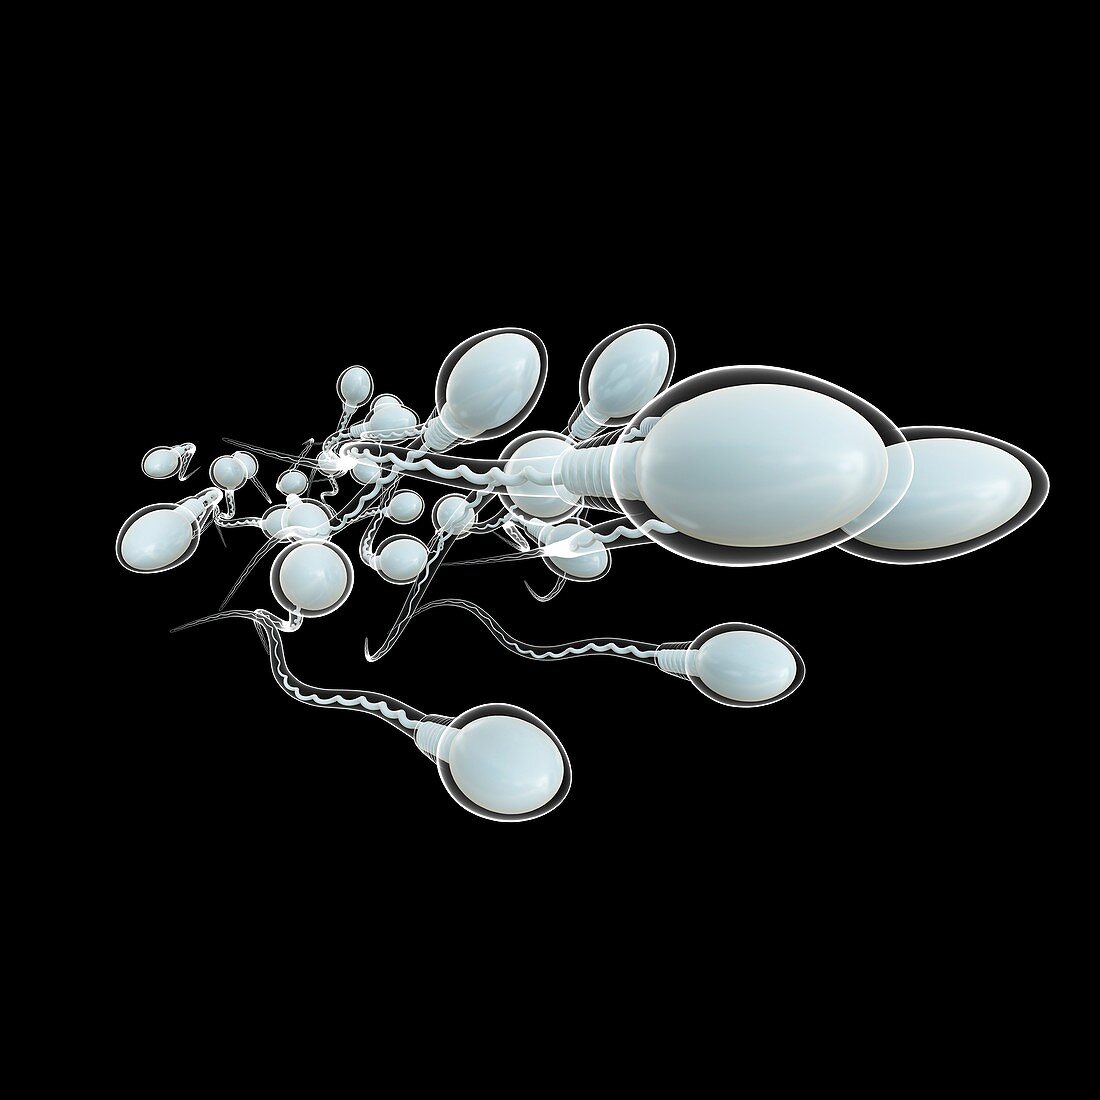 Sperm sex cells, illustration